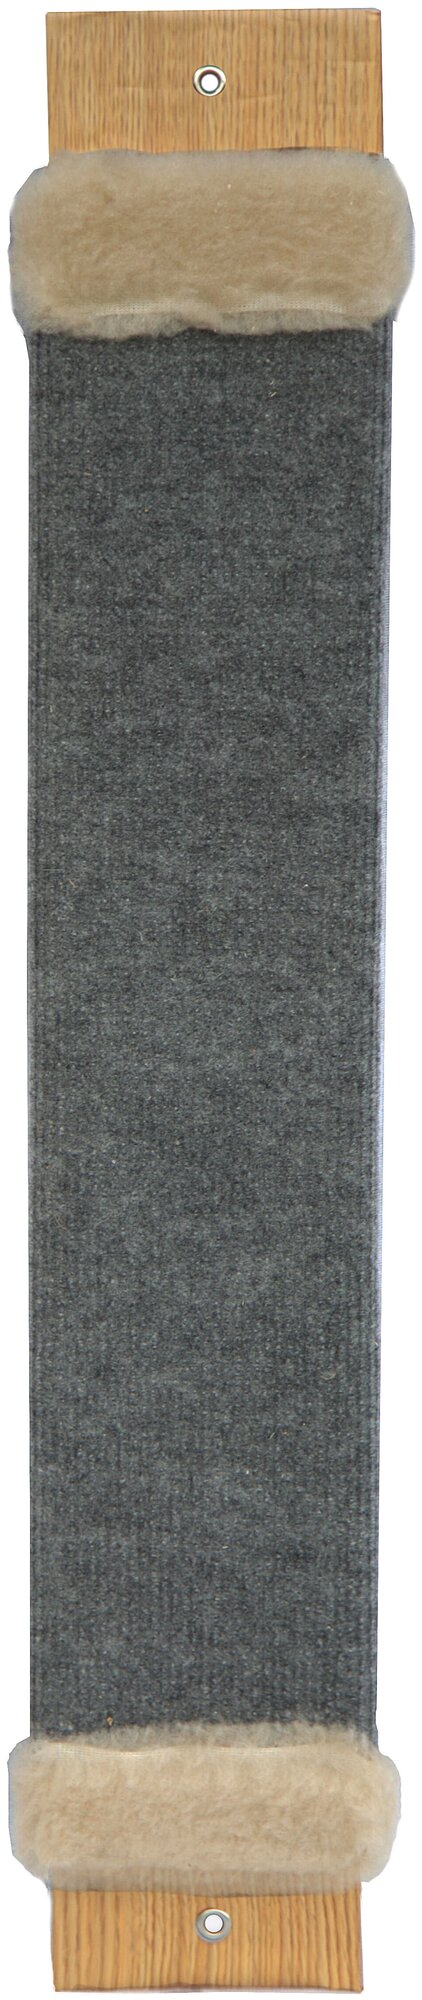 Когтеточка для кошек доска настенная из ковролина с искусственным мехом, 68x12,5 см